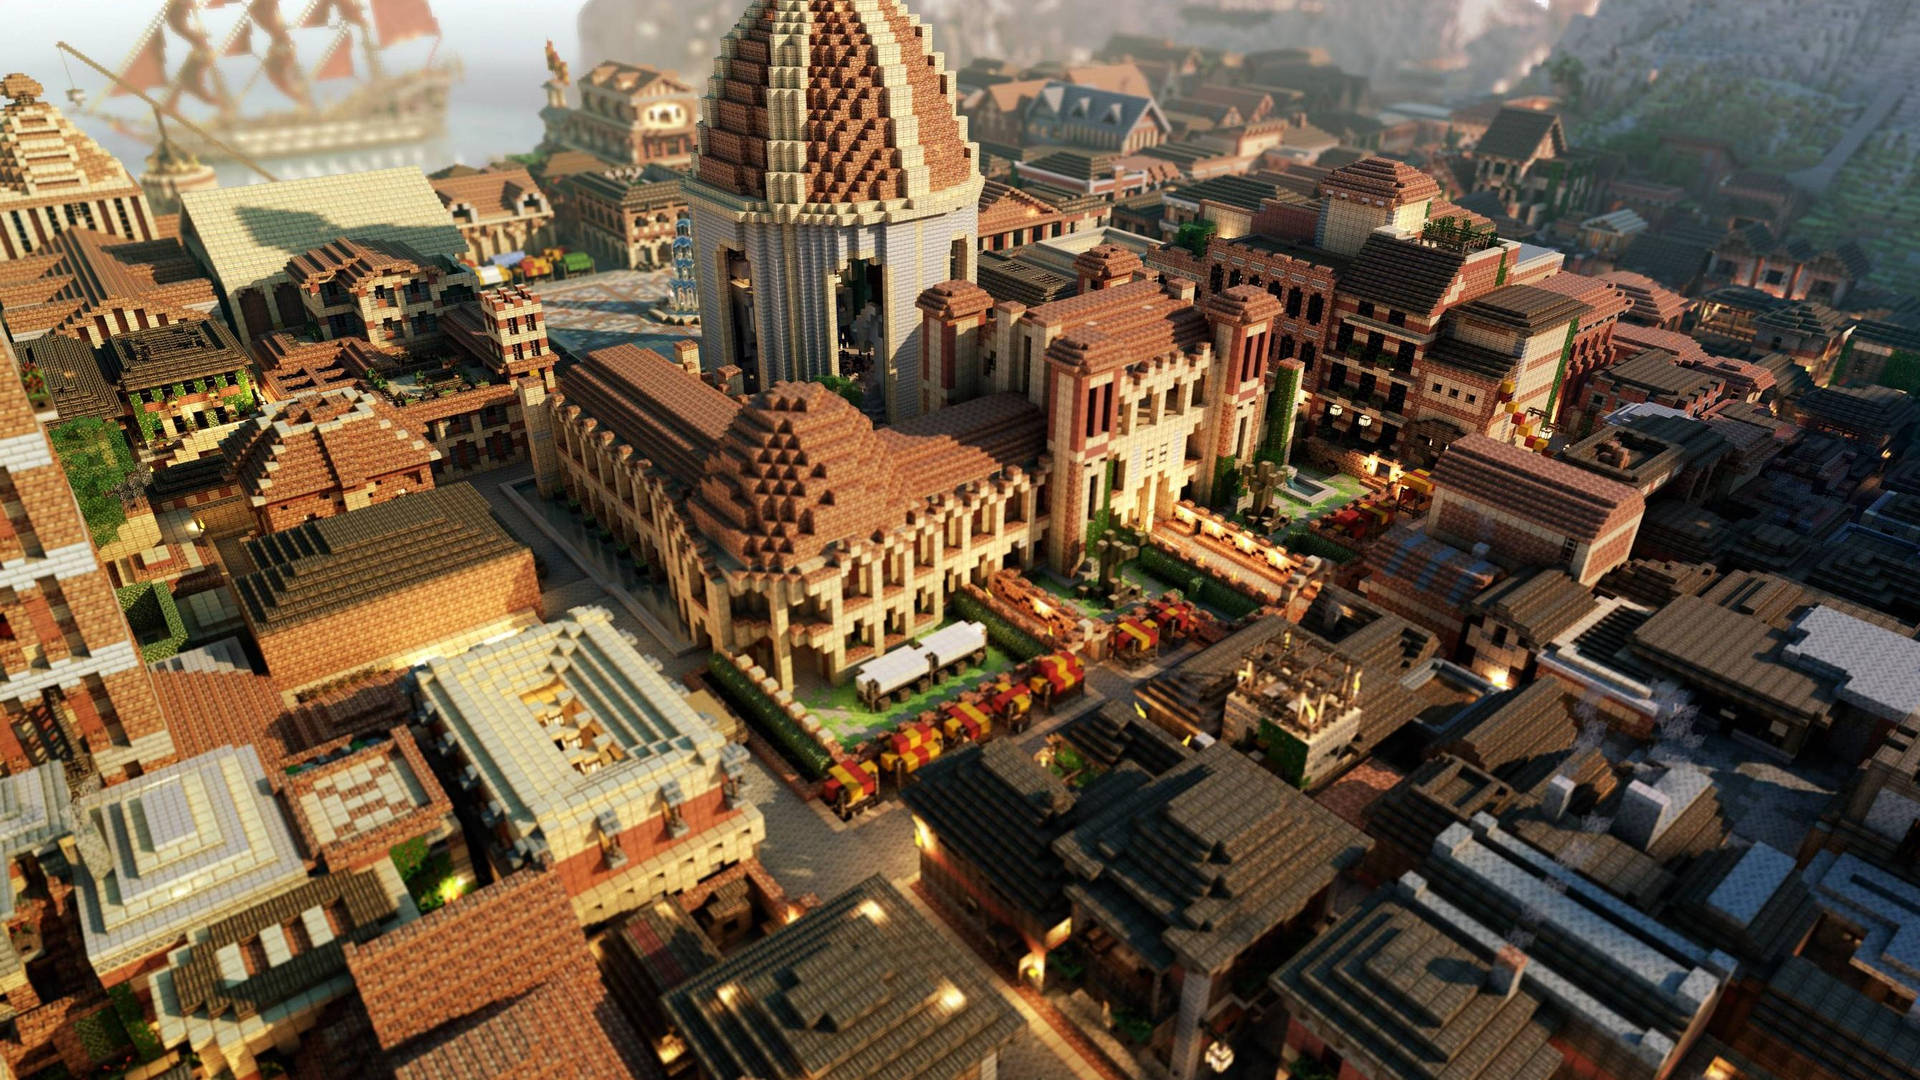 Minecraft Medieval City Wallpaper